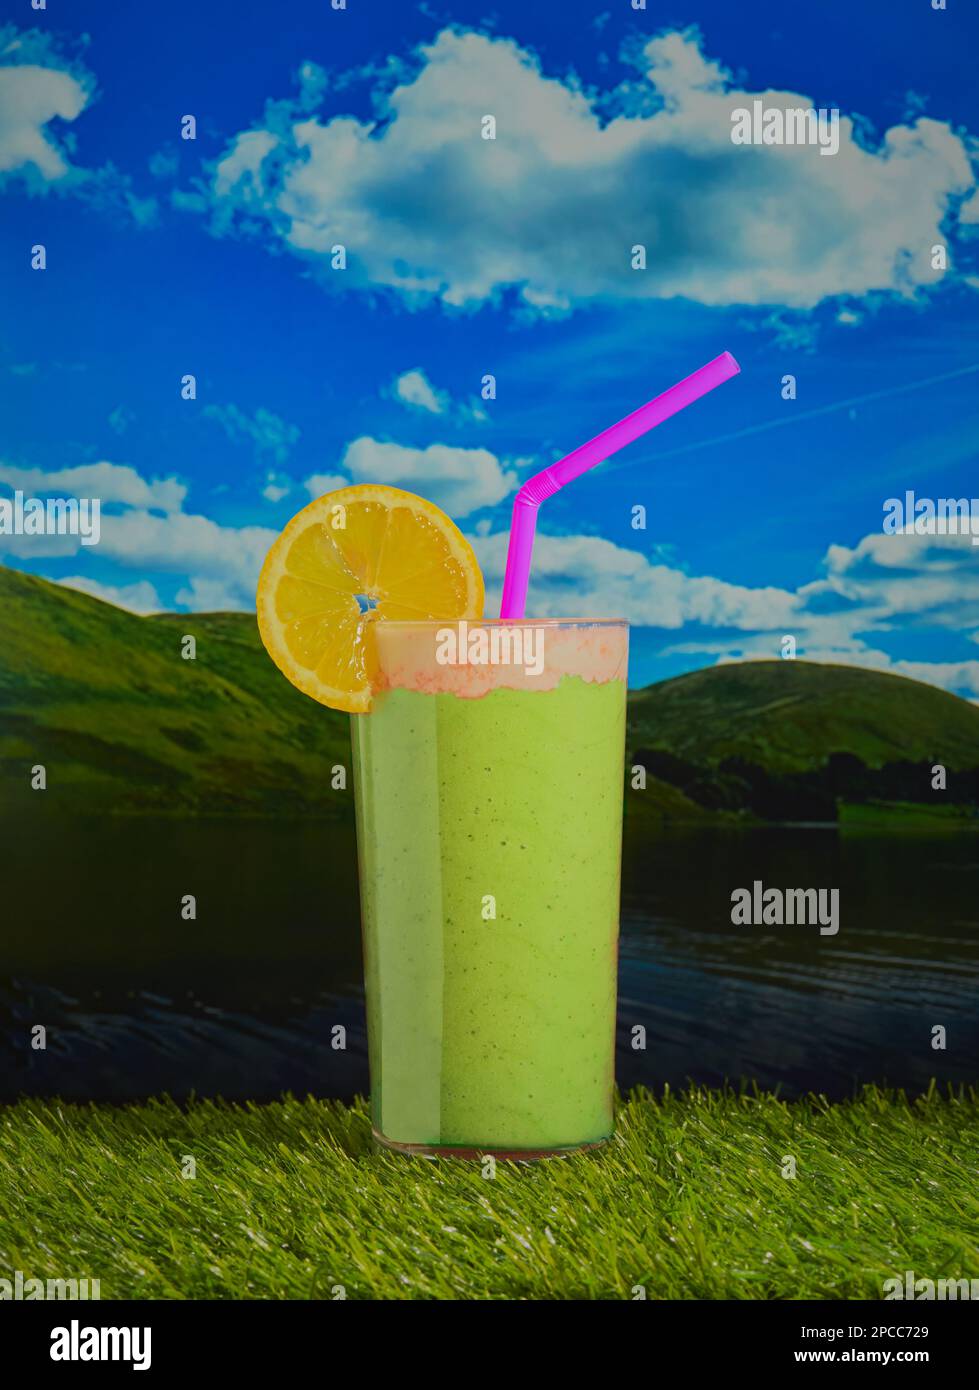 Lebhafter grüner Smoothie garniert mit Creme und einer Zitronenscheibe, aufgenommen auf einer Außenlandschaft mit Hügeln und blauem Himmel mit flauschigen Wolken. Stockfoto